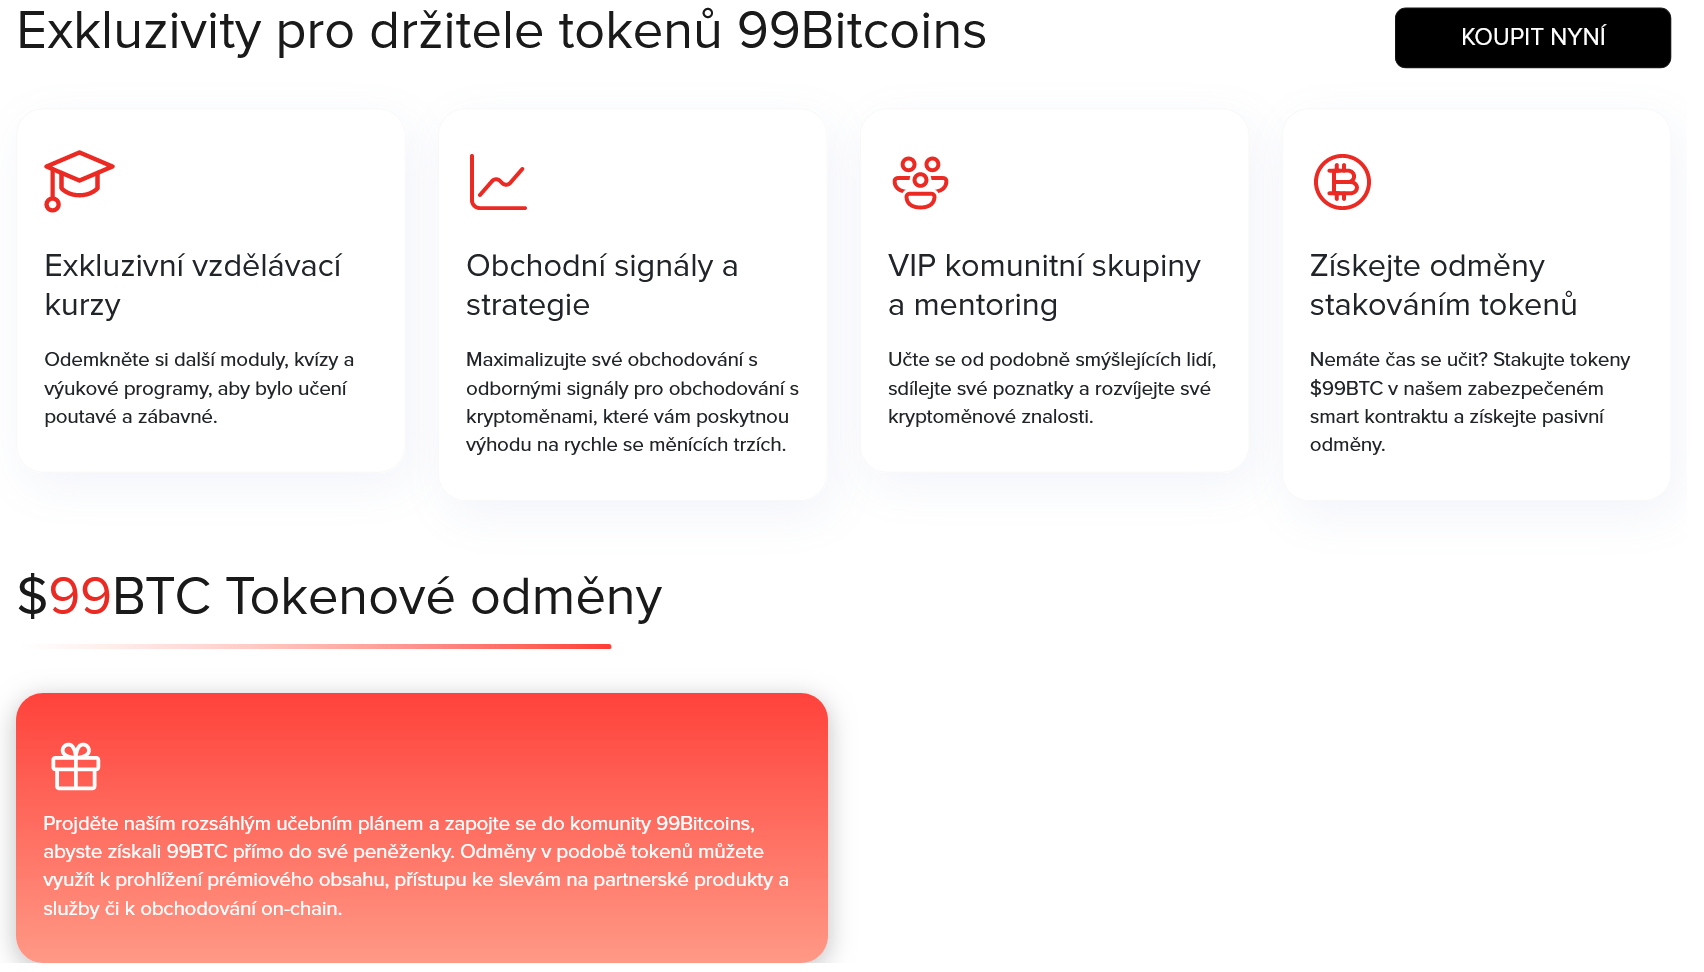 Exkluzivní výhody pro držitele tokenů 99Bitcoins